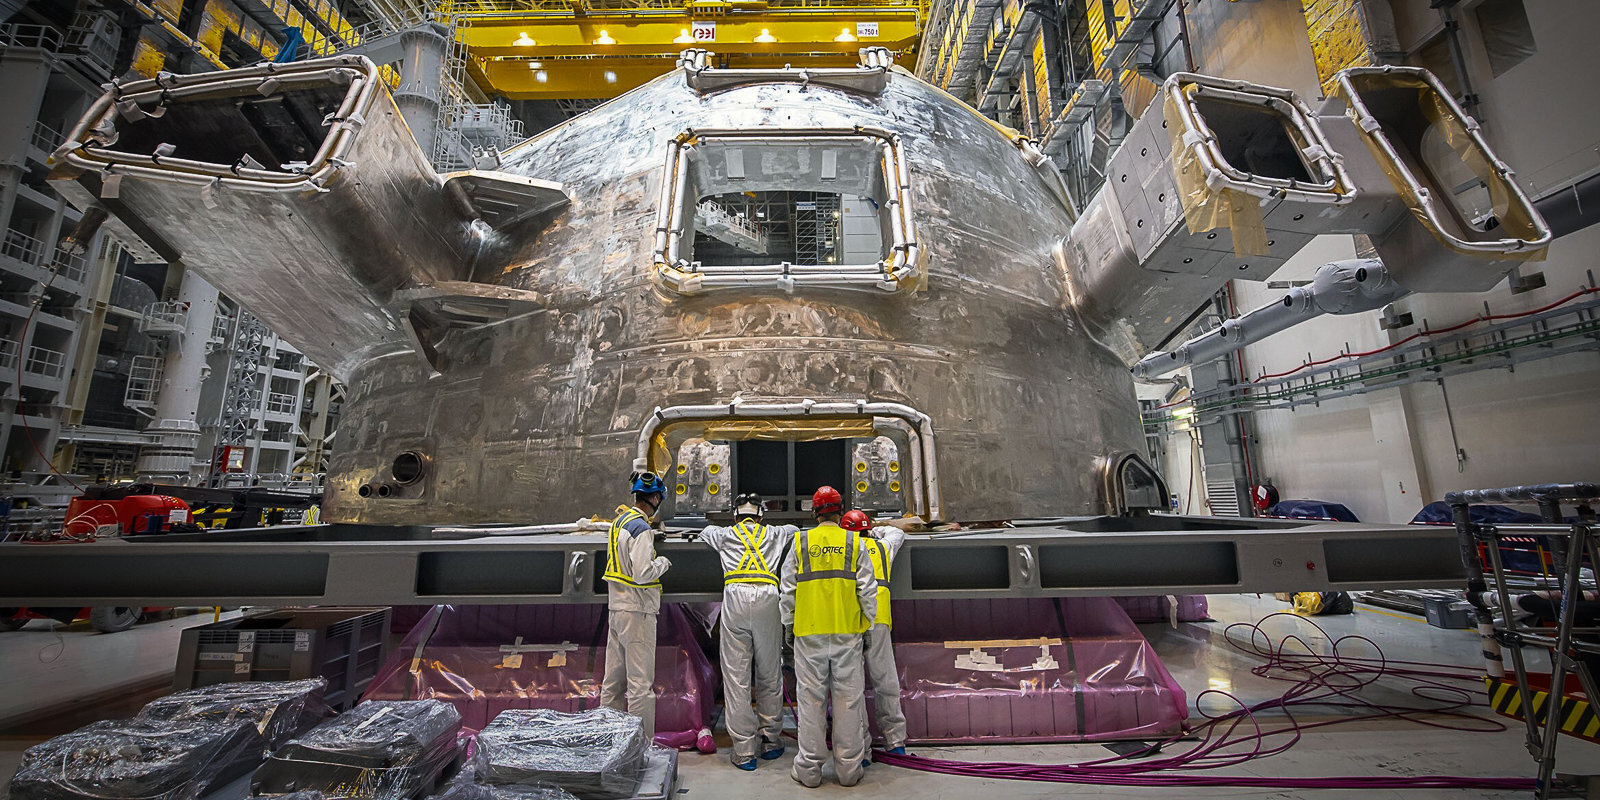 Kodolsintēzes patiesības mirklis nav tālu. Ko latvieši dara gigantiskajā projektā ITER